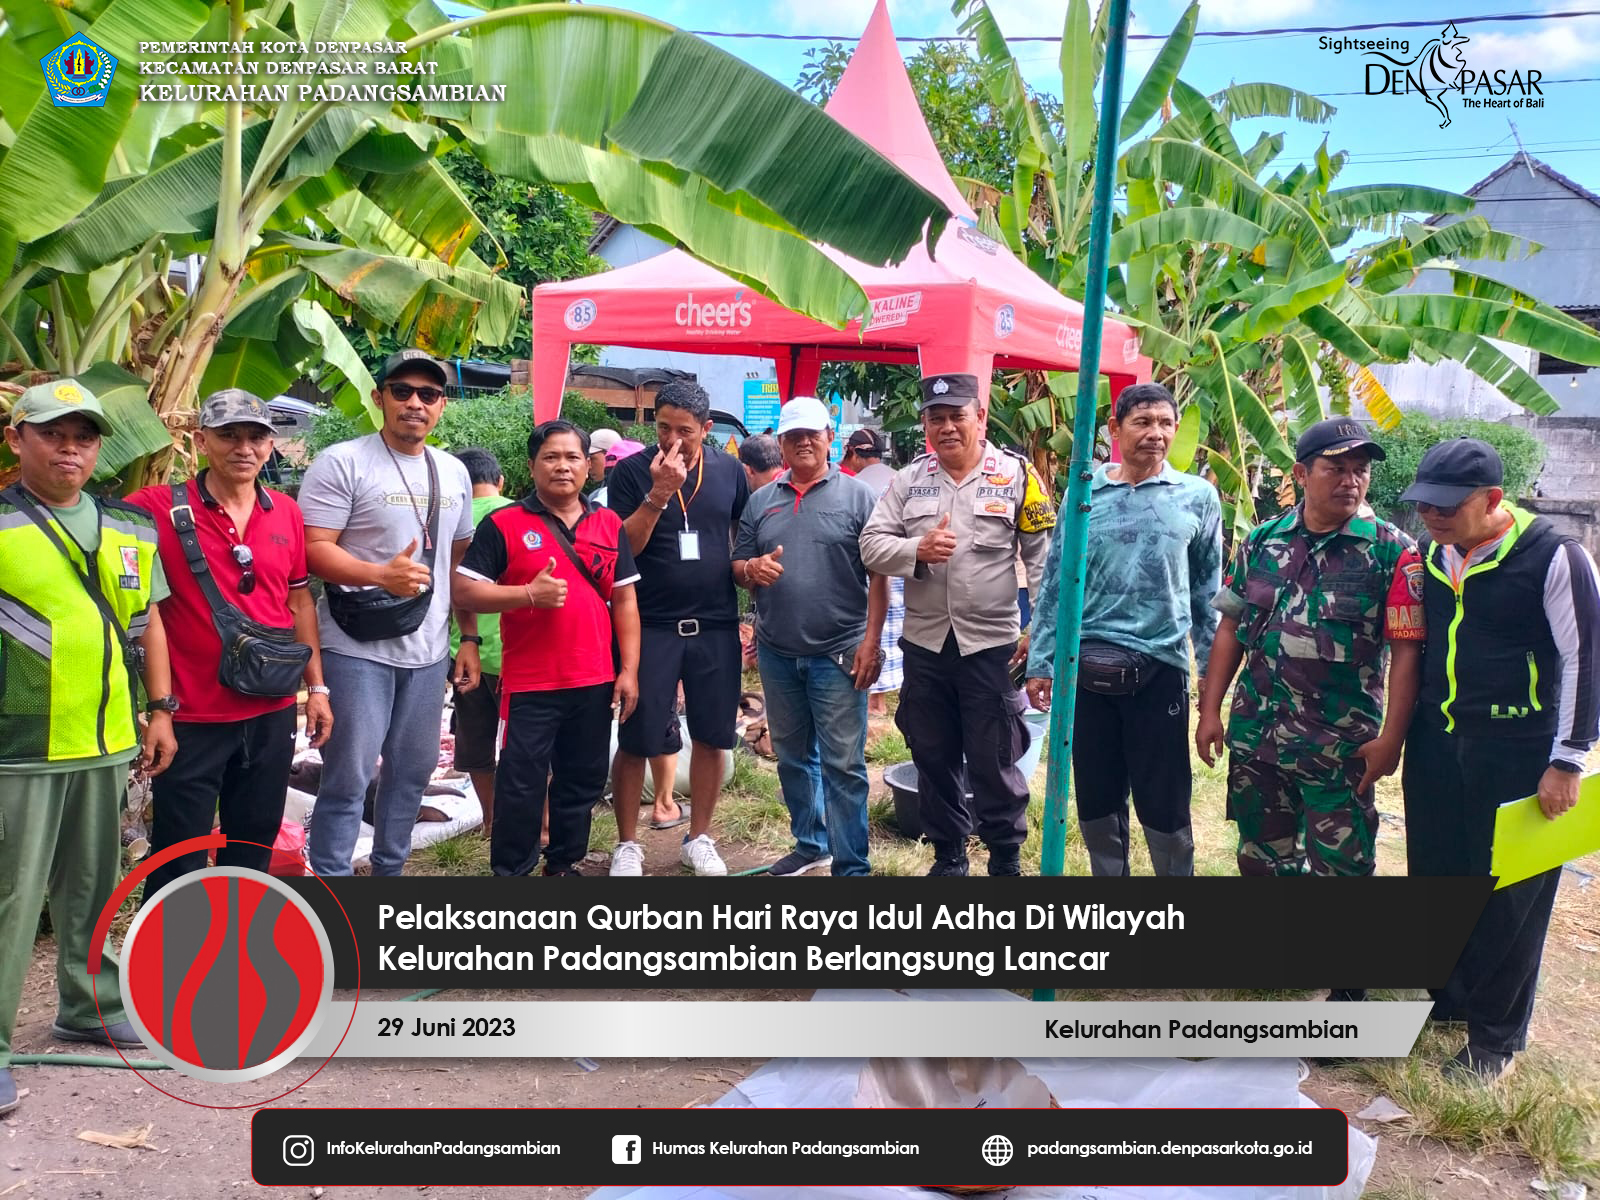 Pelaksanaan Qurban Hari Raya Idul Adha Di Kelurahan Padangsambian Berlangsung Lancar